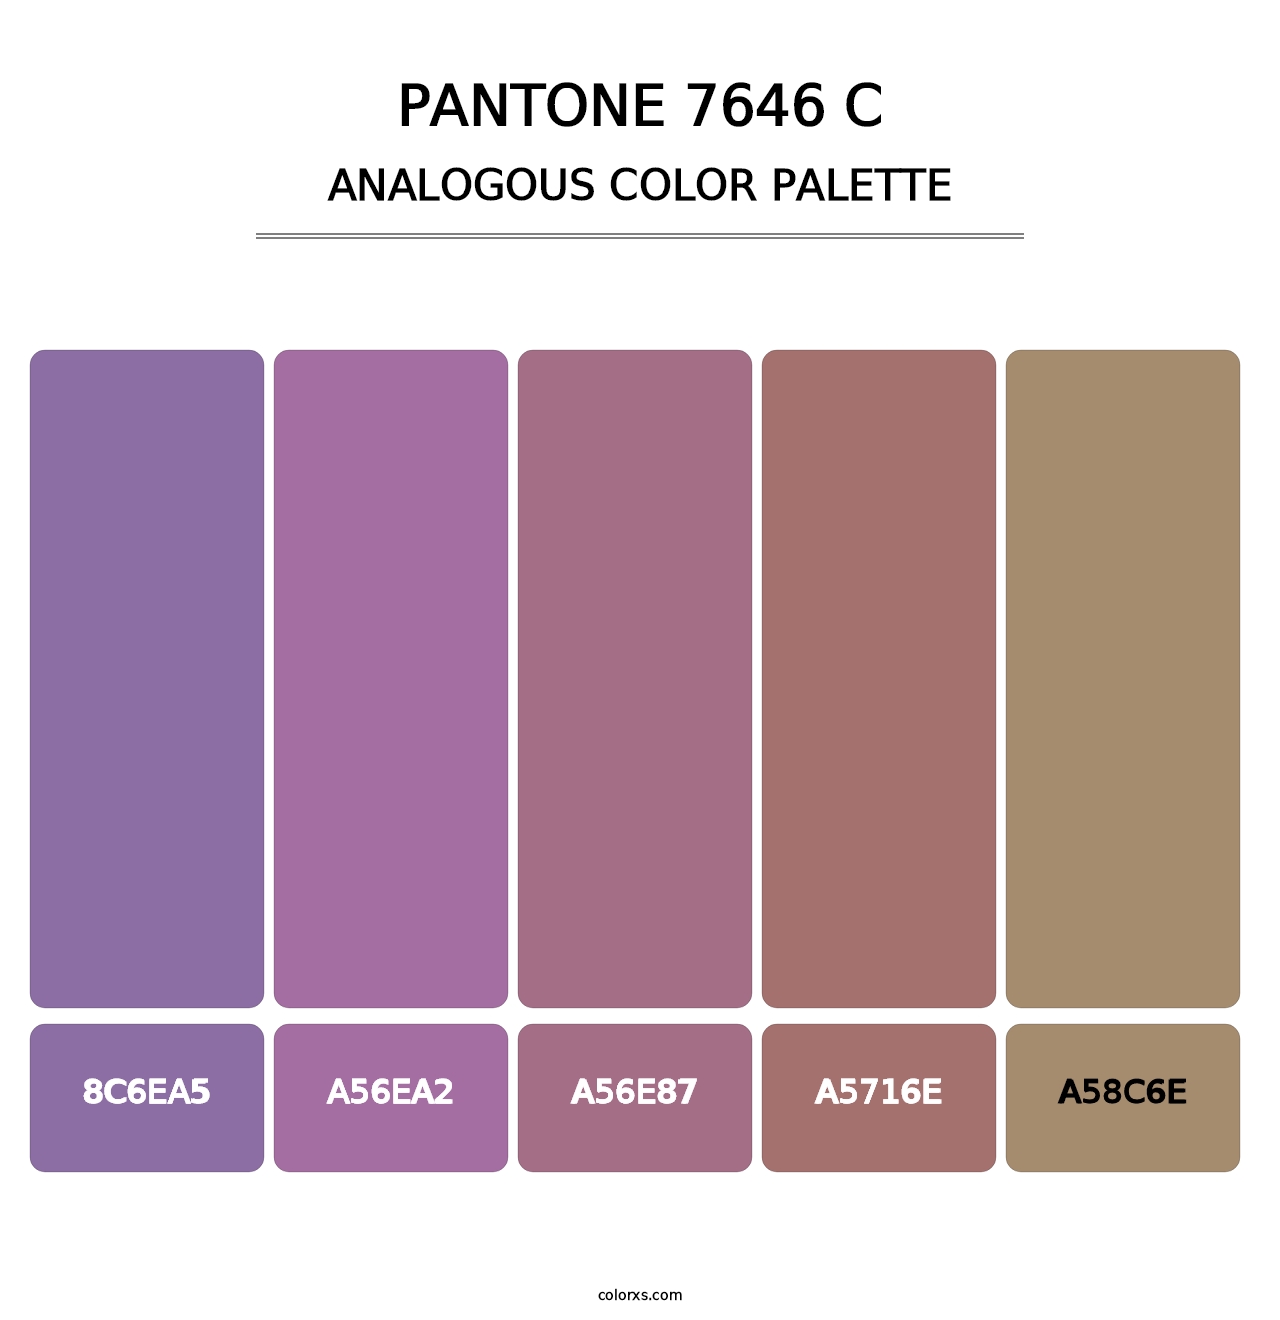 PANTONE 7646 C - Analogous Color Palette